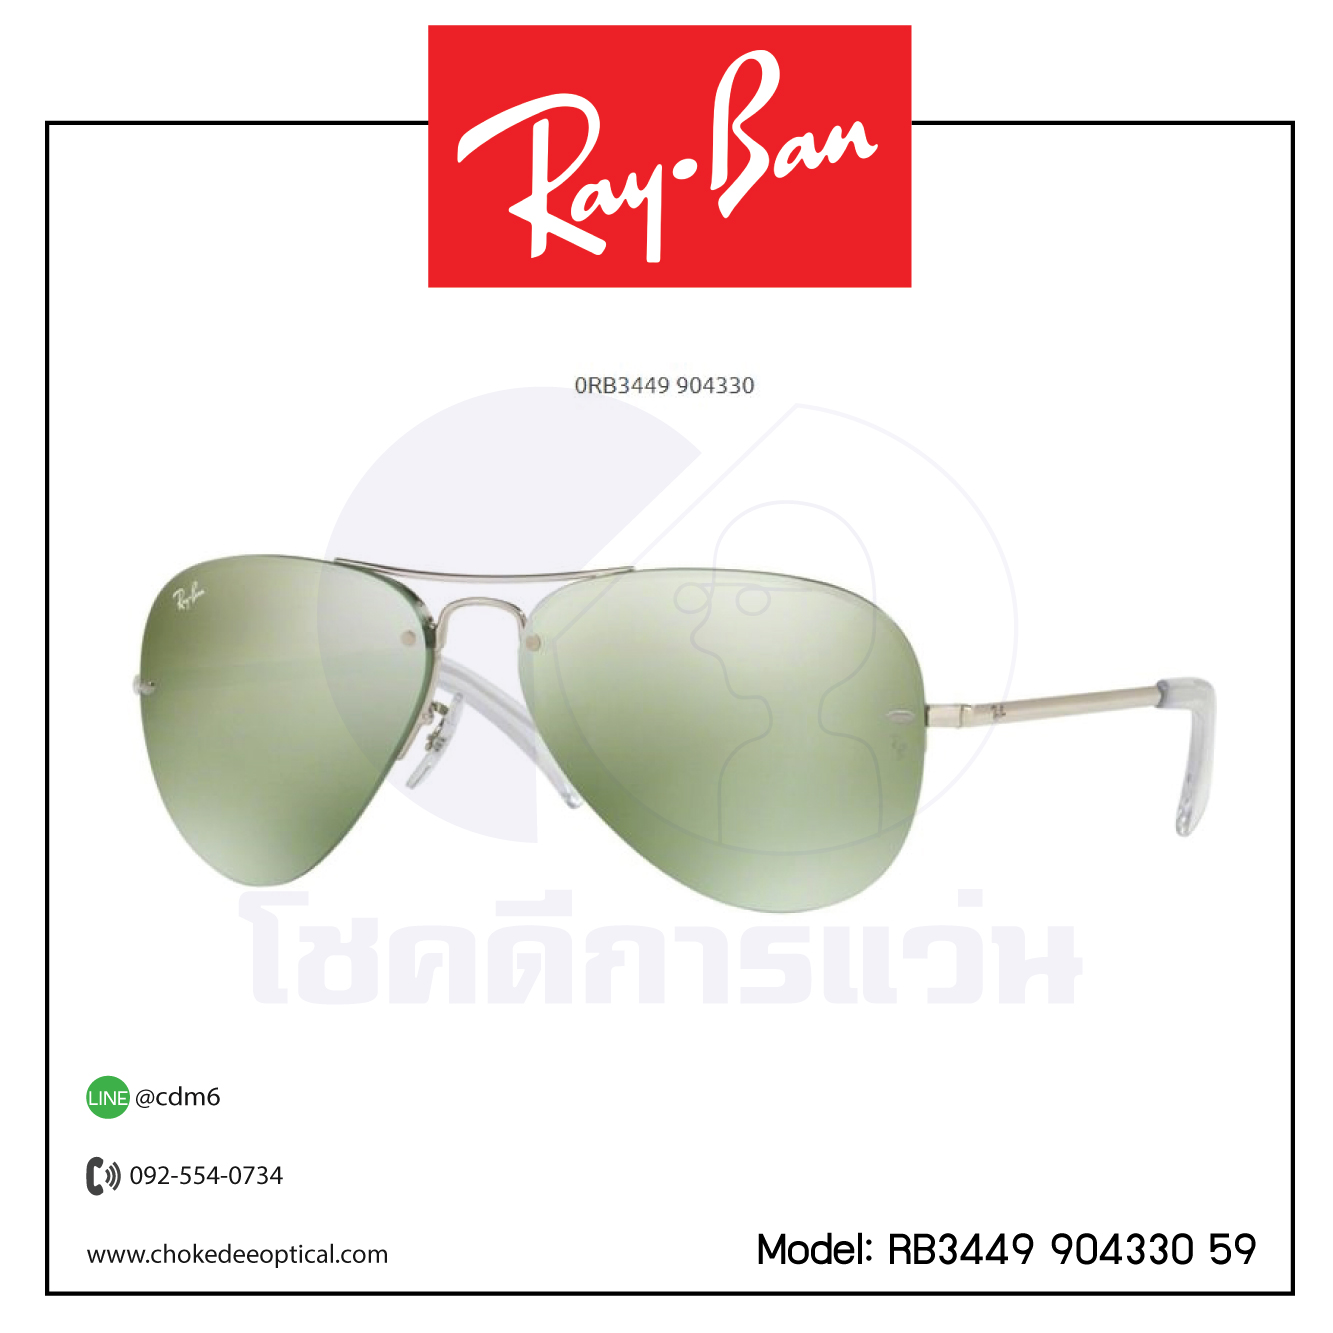 แว่นกันแดด Rayban RB3449 904330 59